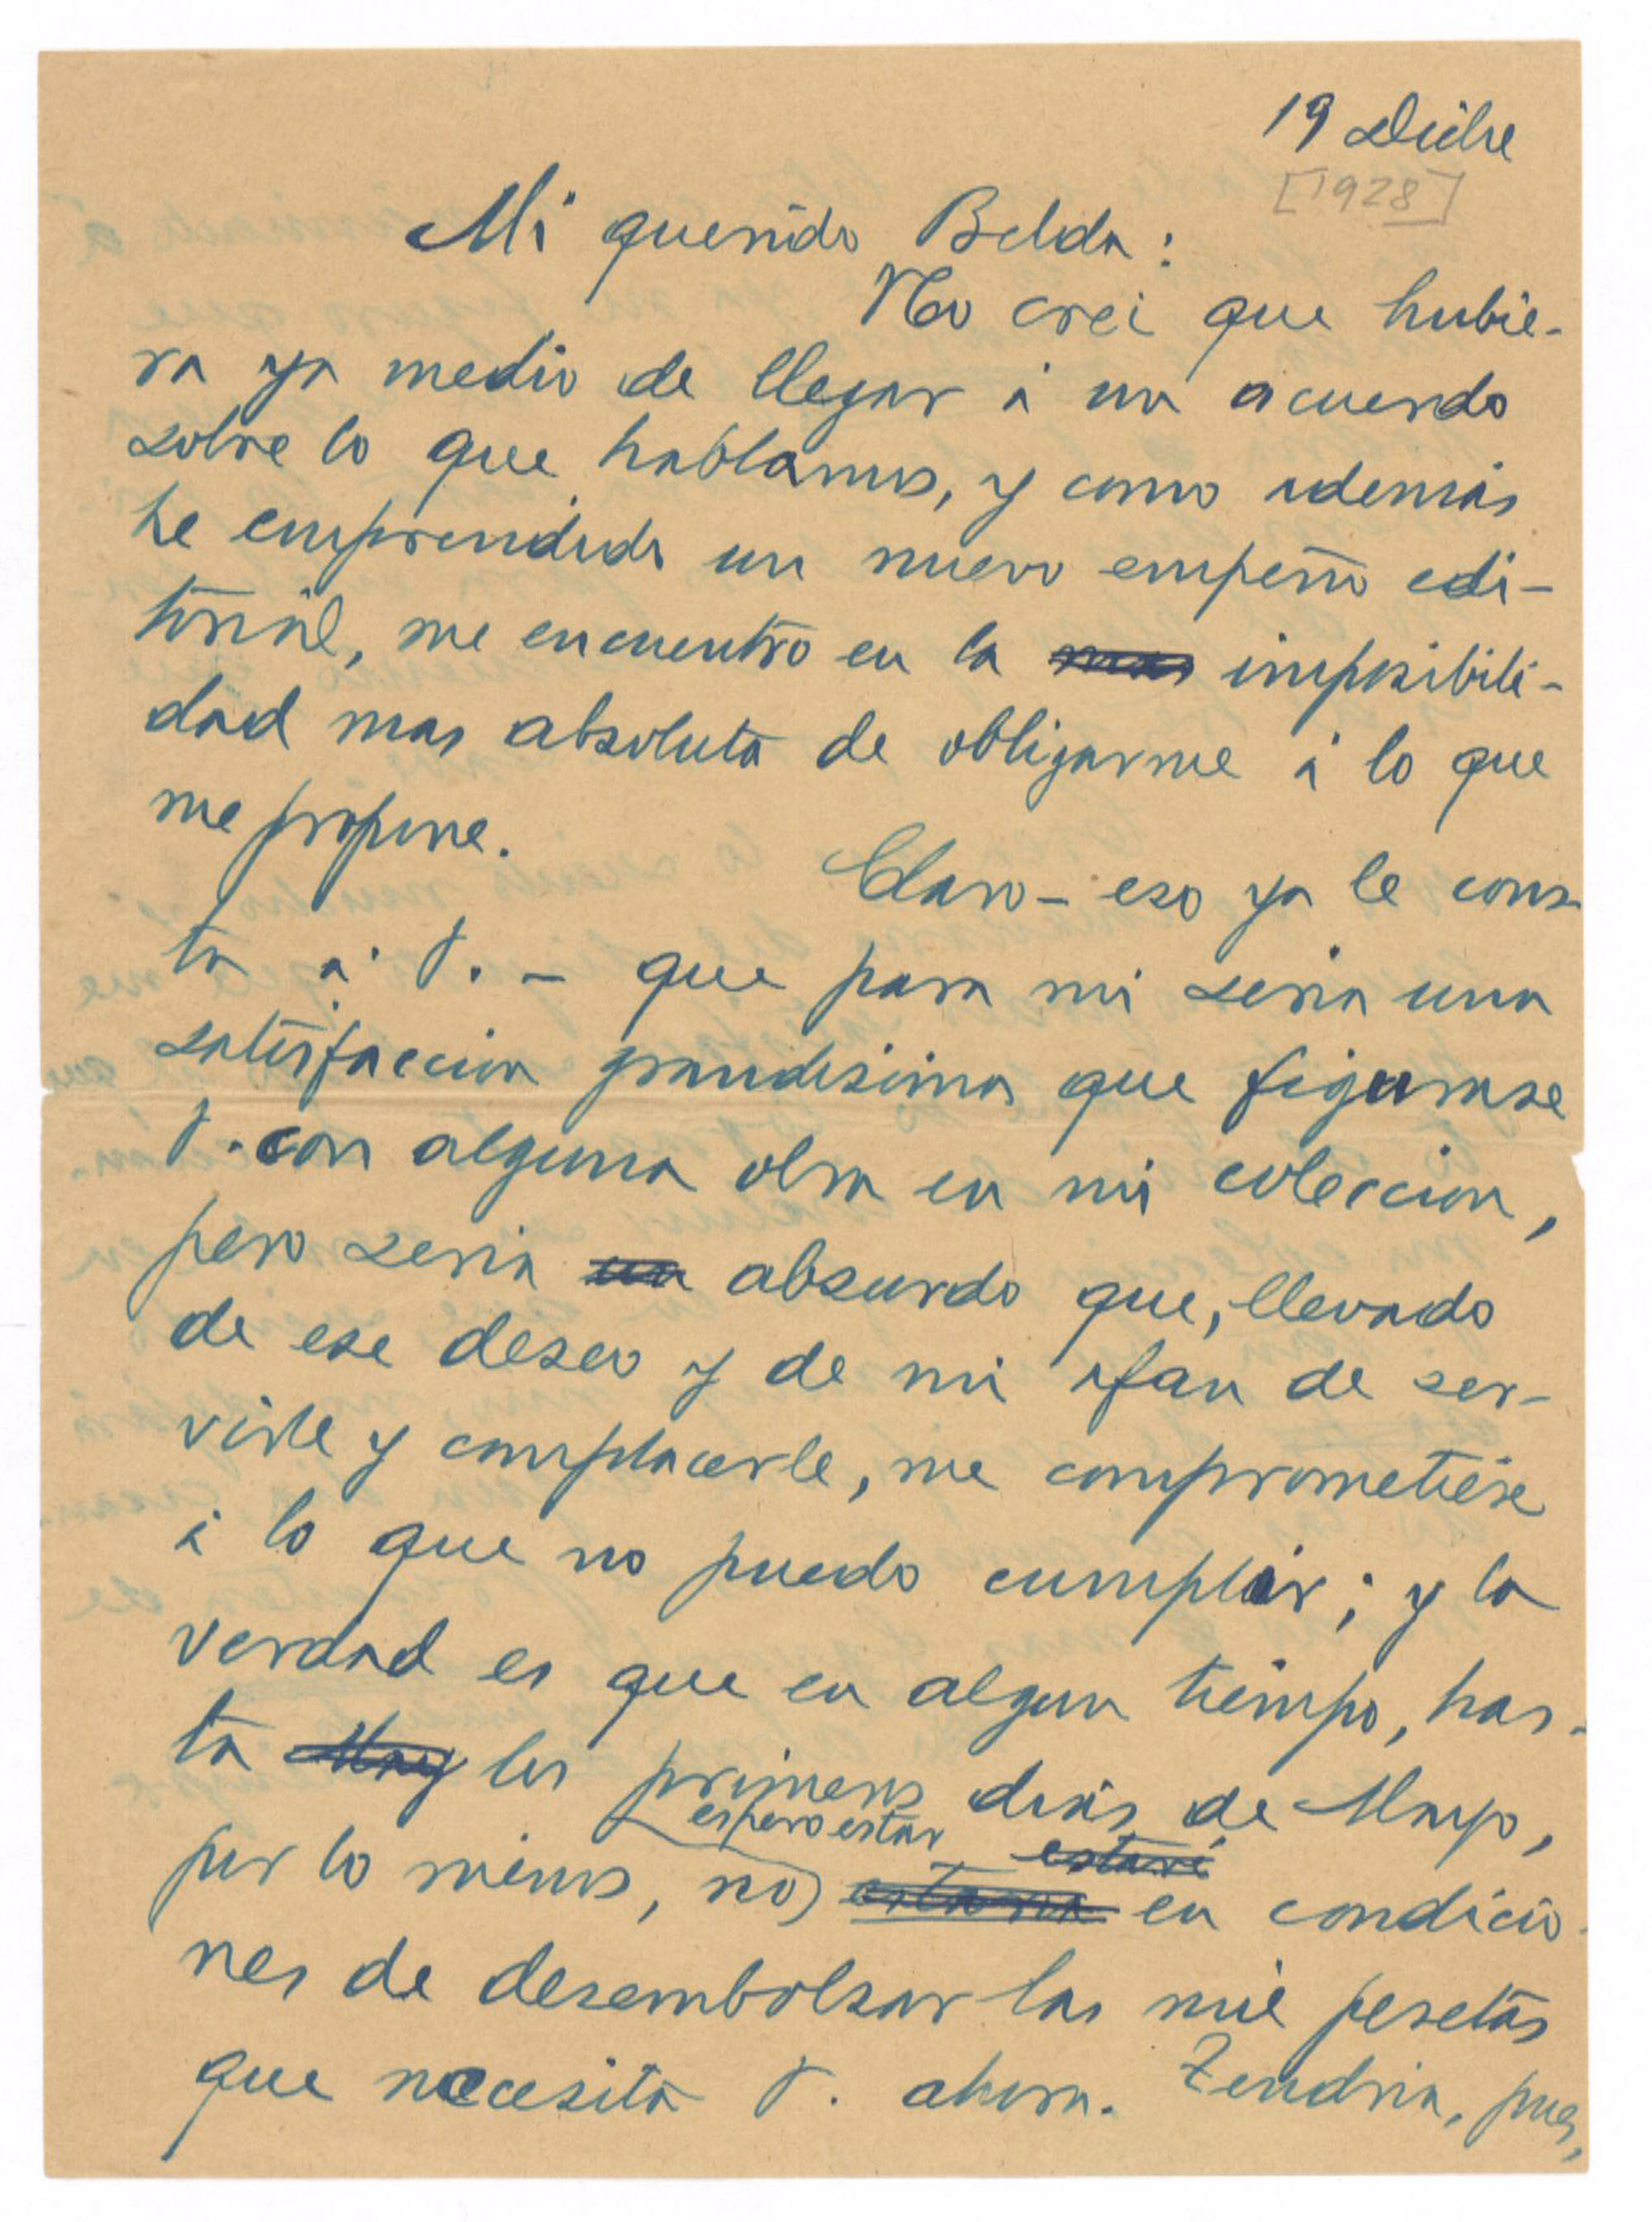 Carta de José Ruiz-Castillo a Joaquín Belda disculpándose por no poder satisfacer las peticiones sobre las condiciones de su próxima publicación y un anticipo por ella.